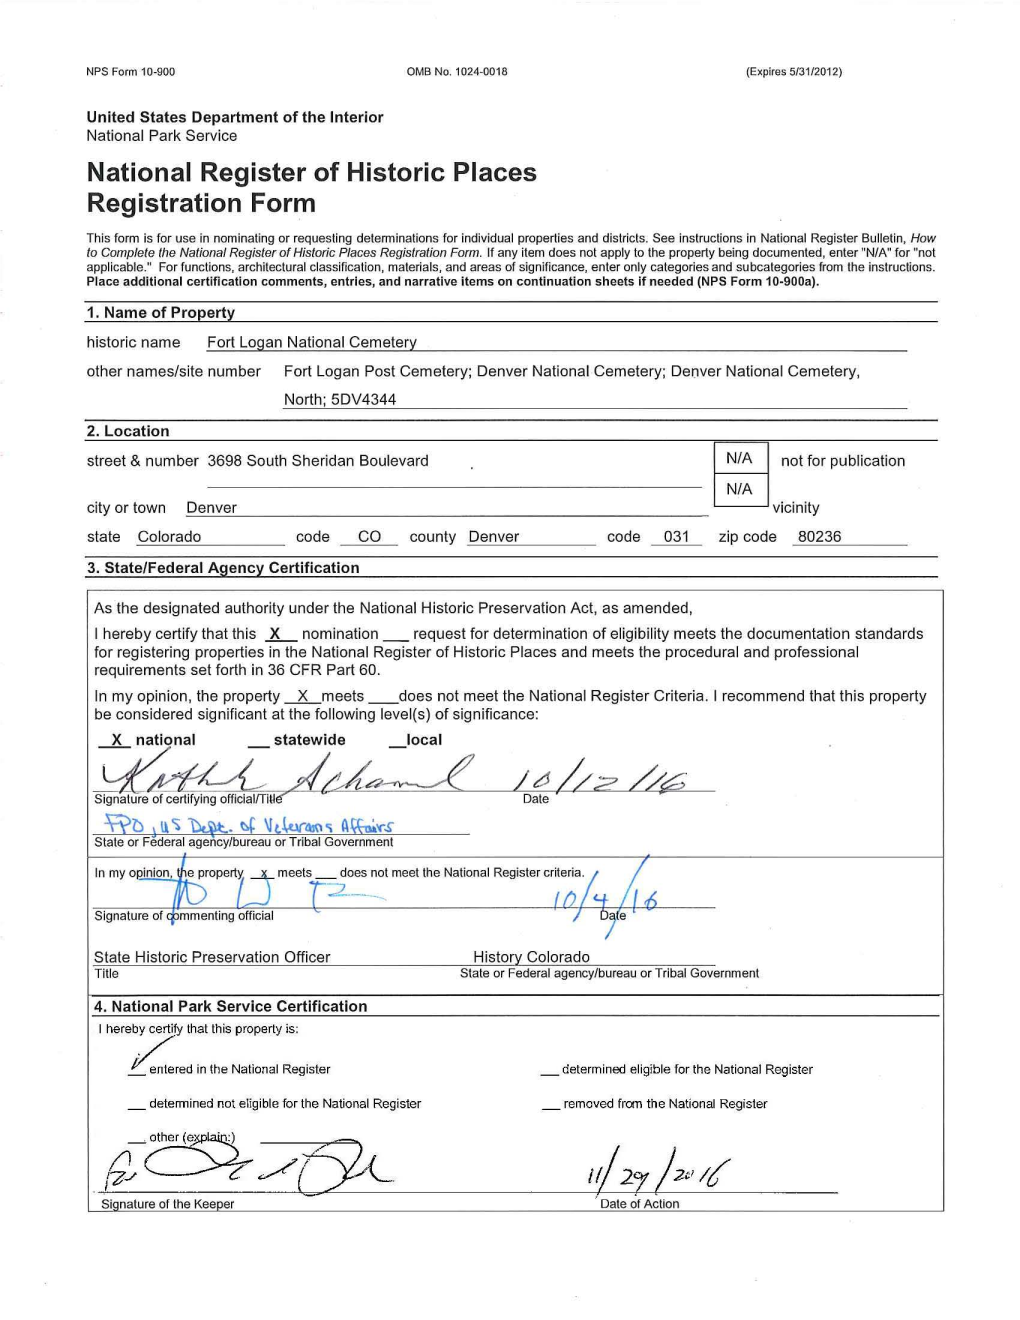 National Register of Historic Places Registration Form Fort Logan